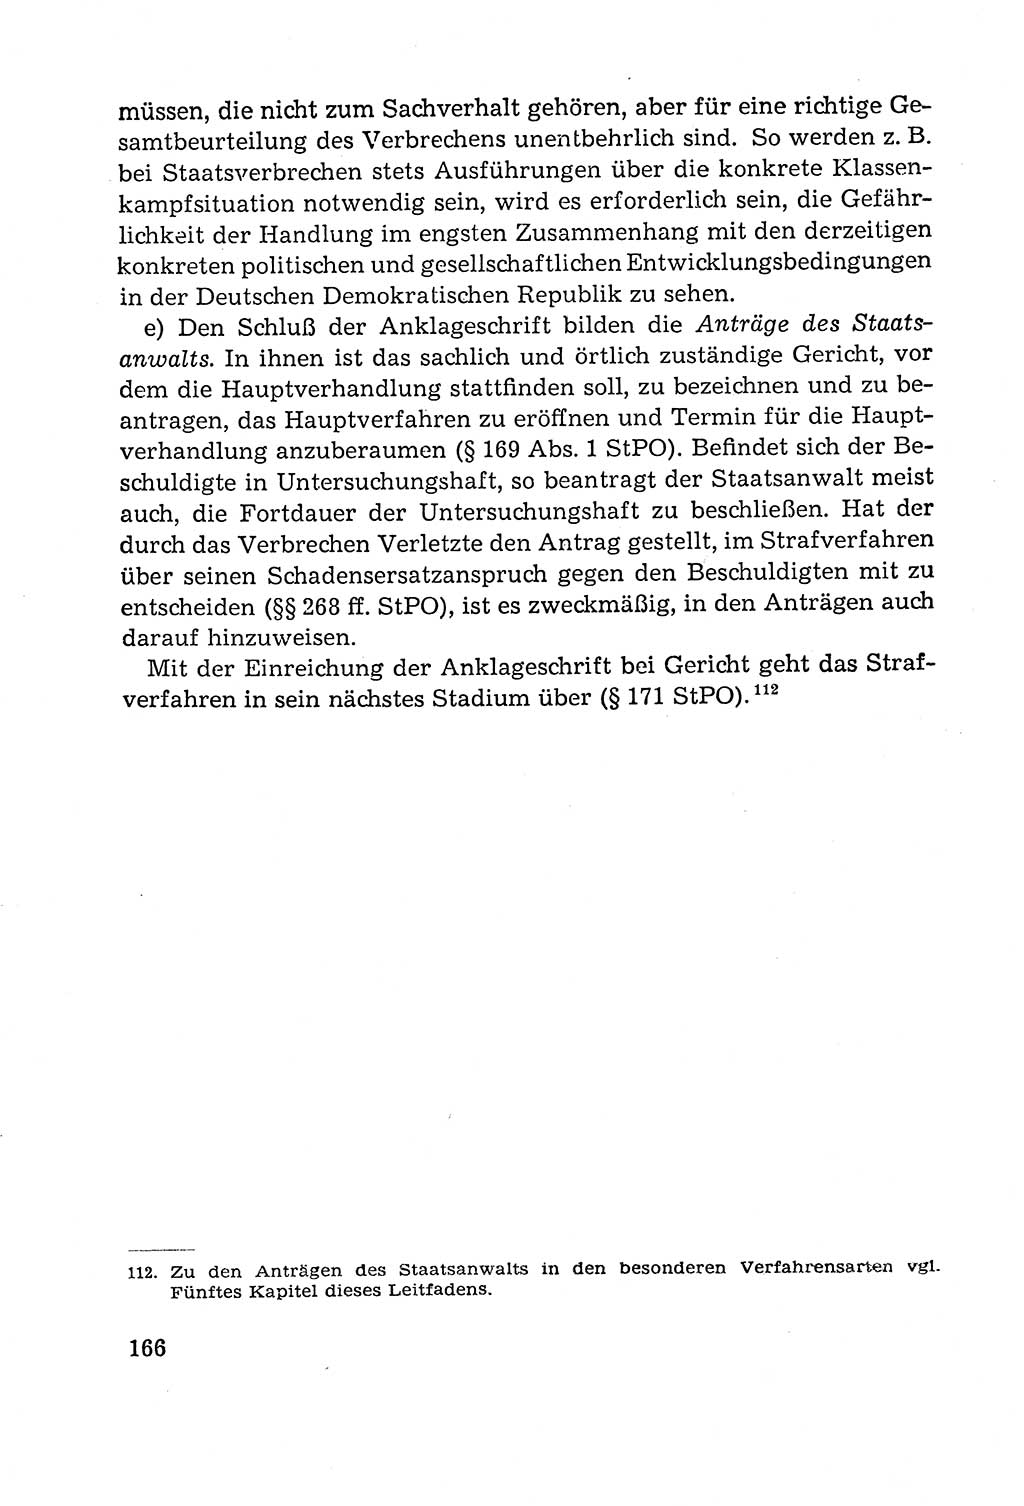 Leitfaden des Strafprozeßrechts der Deutschen Demokratischen Republik (DDR) 1959, Seite 166 (LF StPR DDR 1959, S. 166)